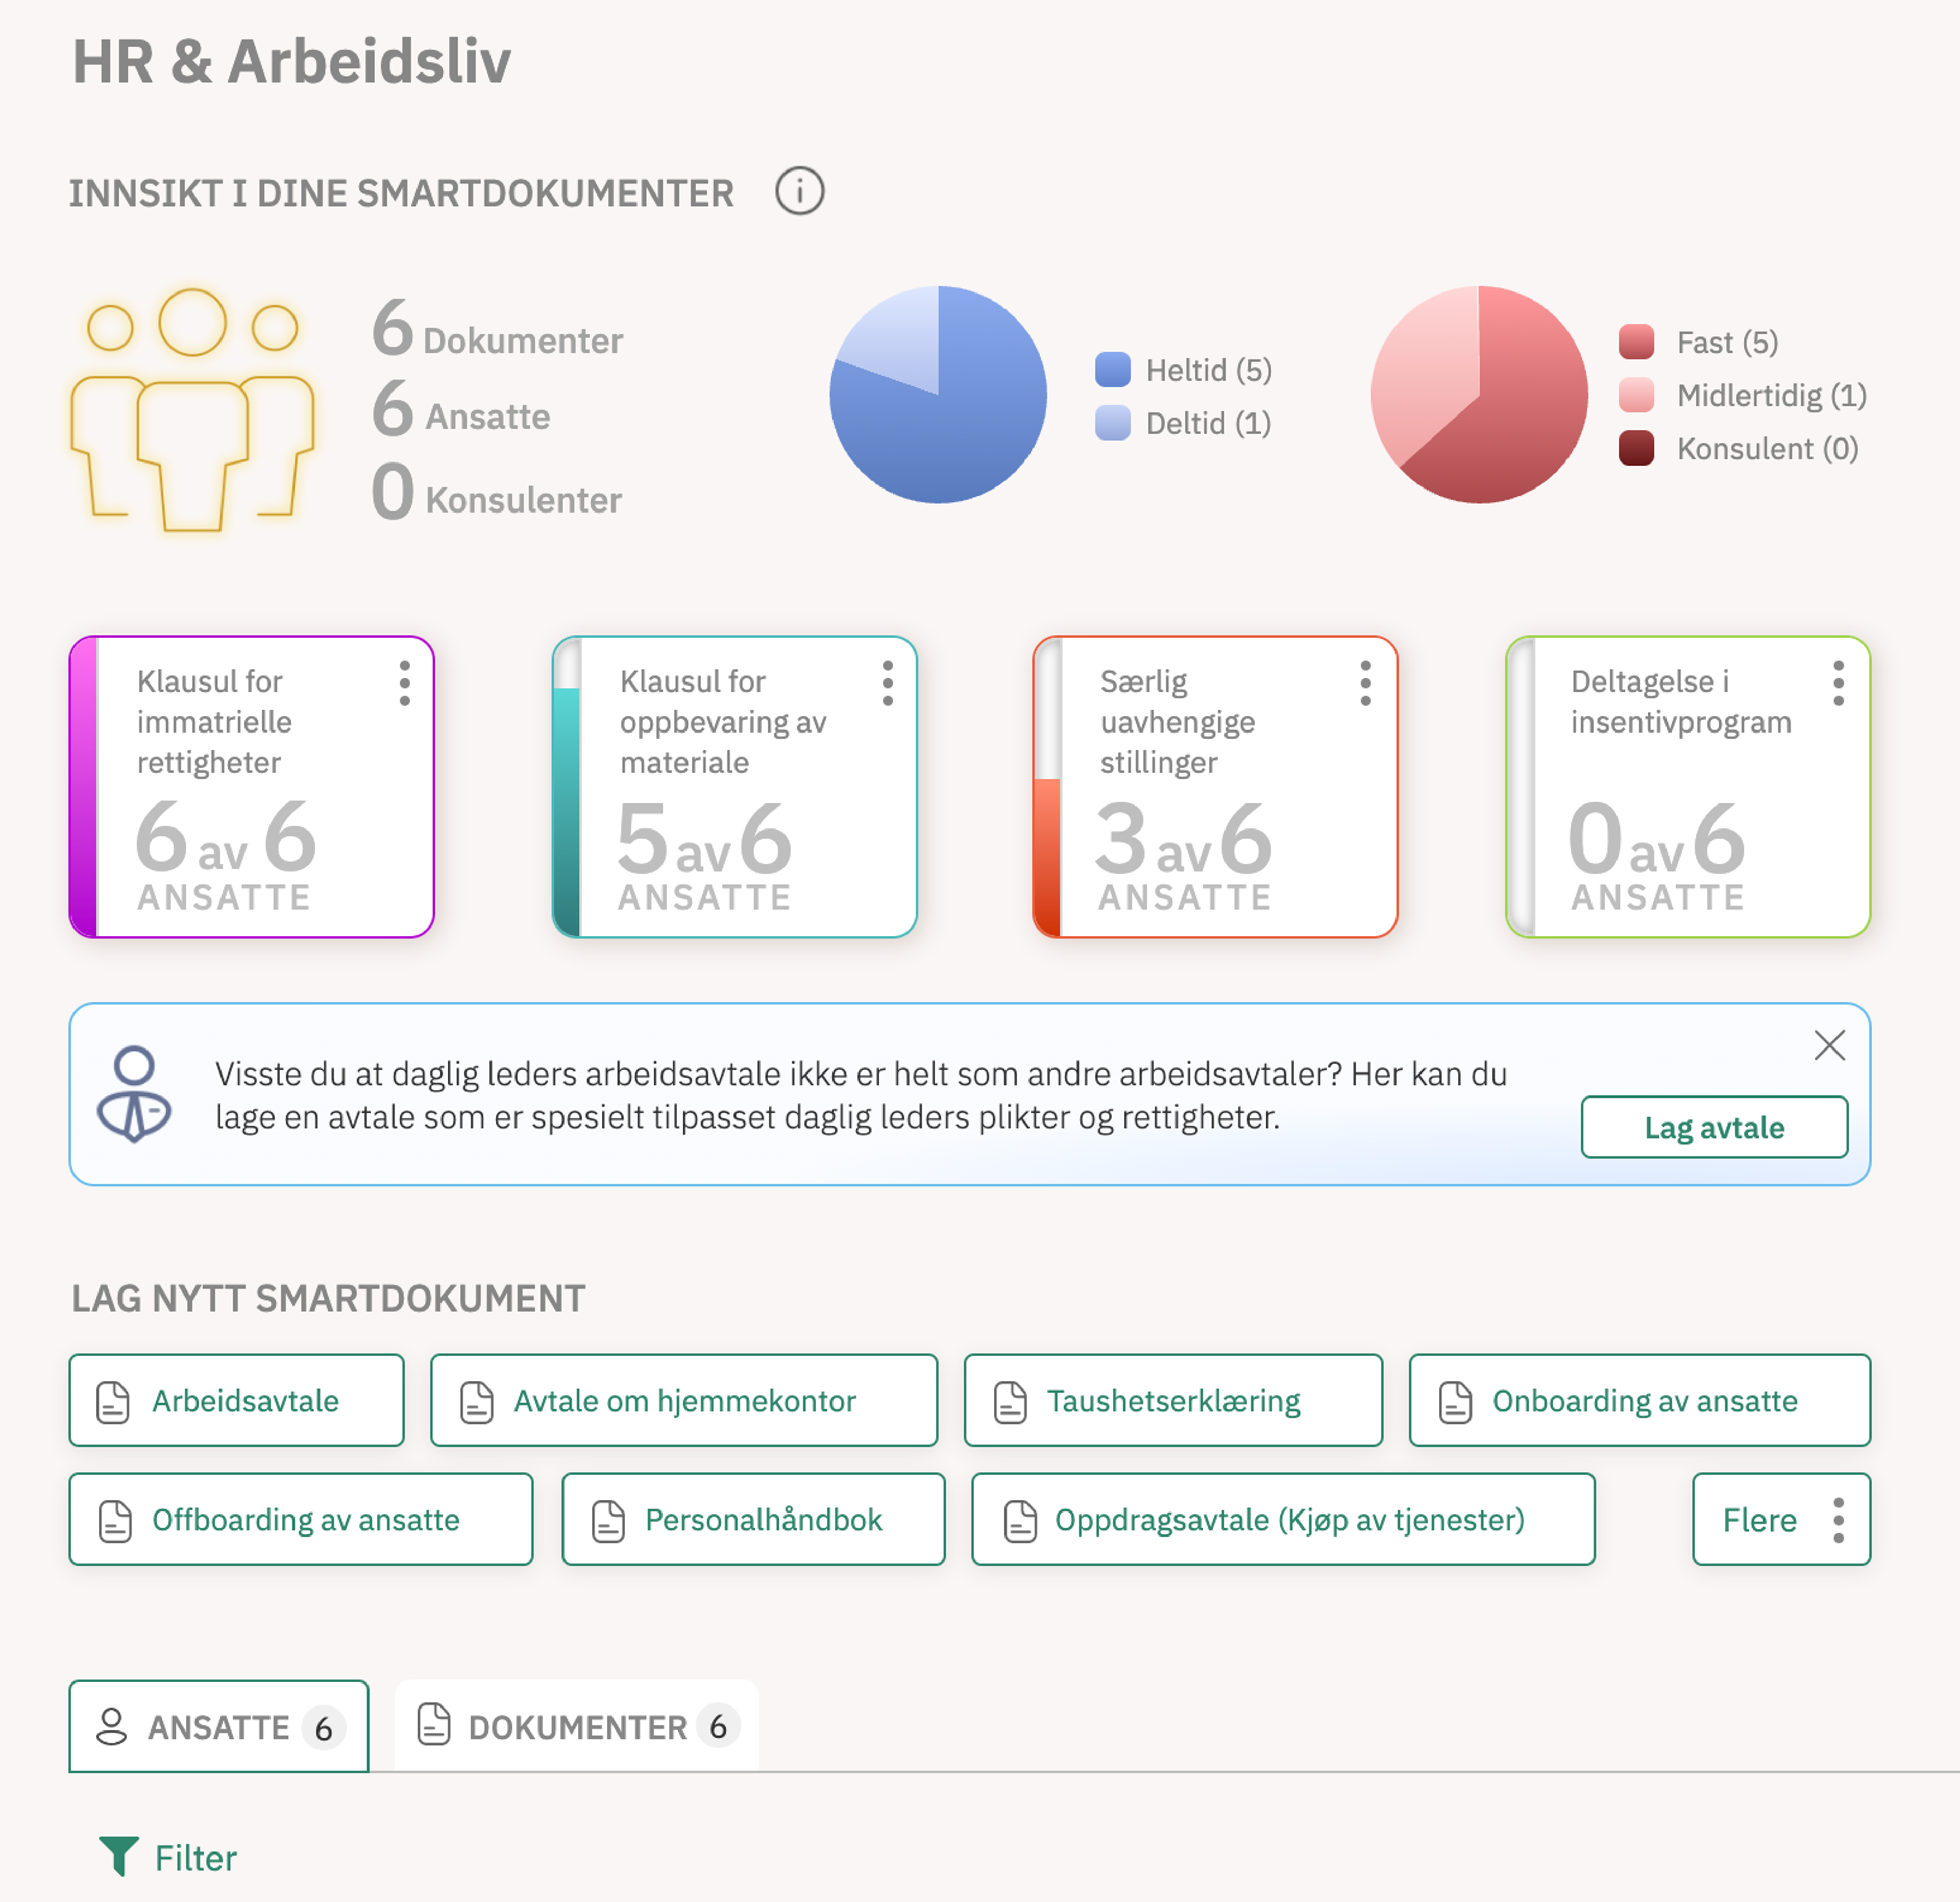 Bilde av dashboardet for HR og arbeidsliv